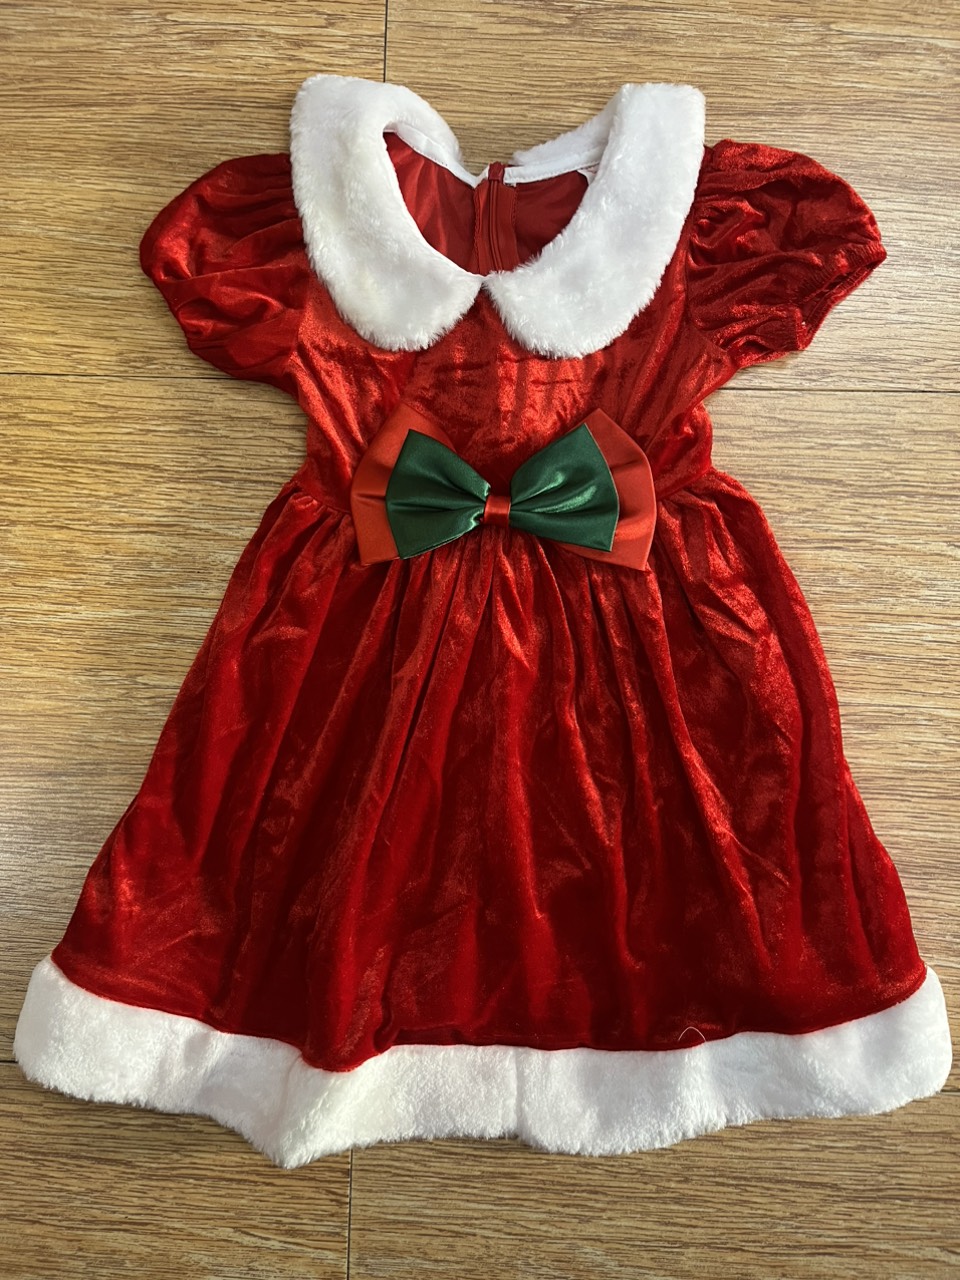 Đầm Giáng Sinh Bé Gái Phối Nơ Đỏ Xanh Viền Lông thích hợp cho bé từ 3-4 tuổi mặc vừa